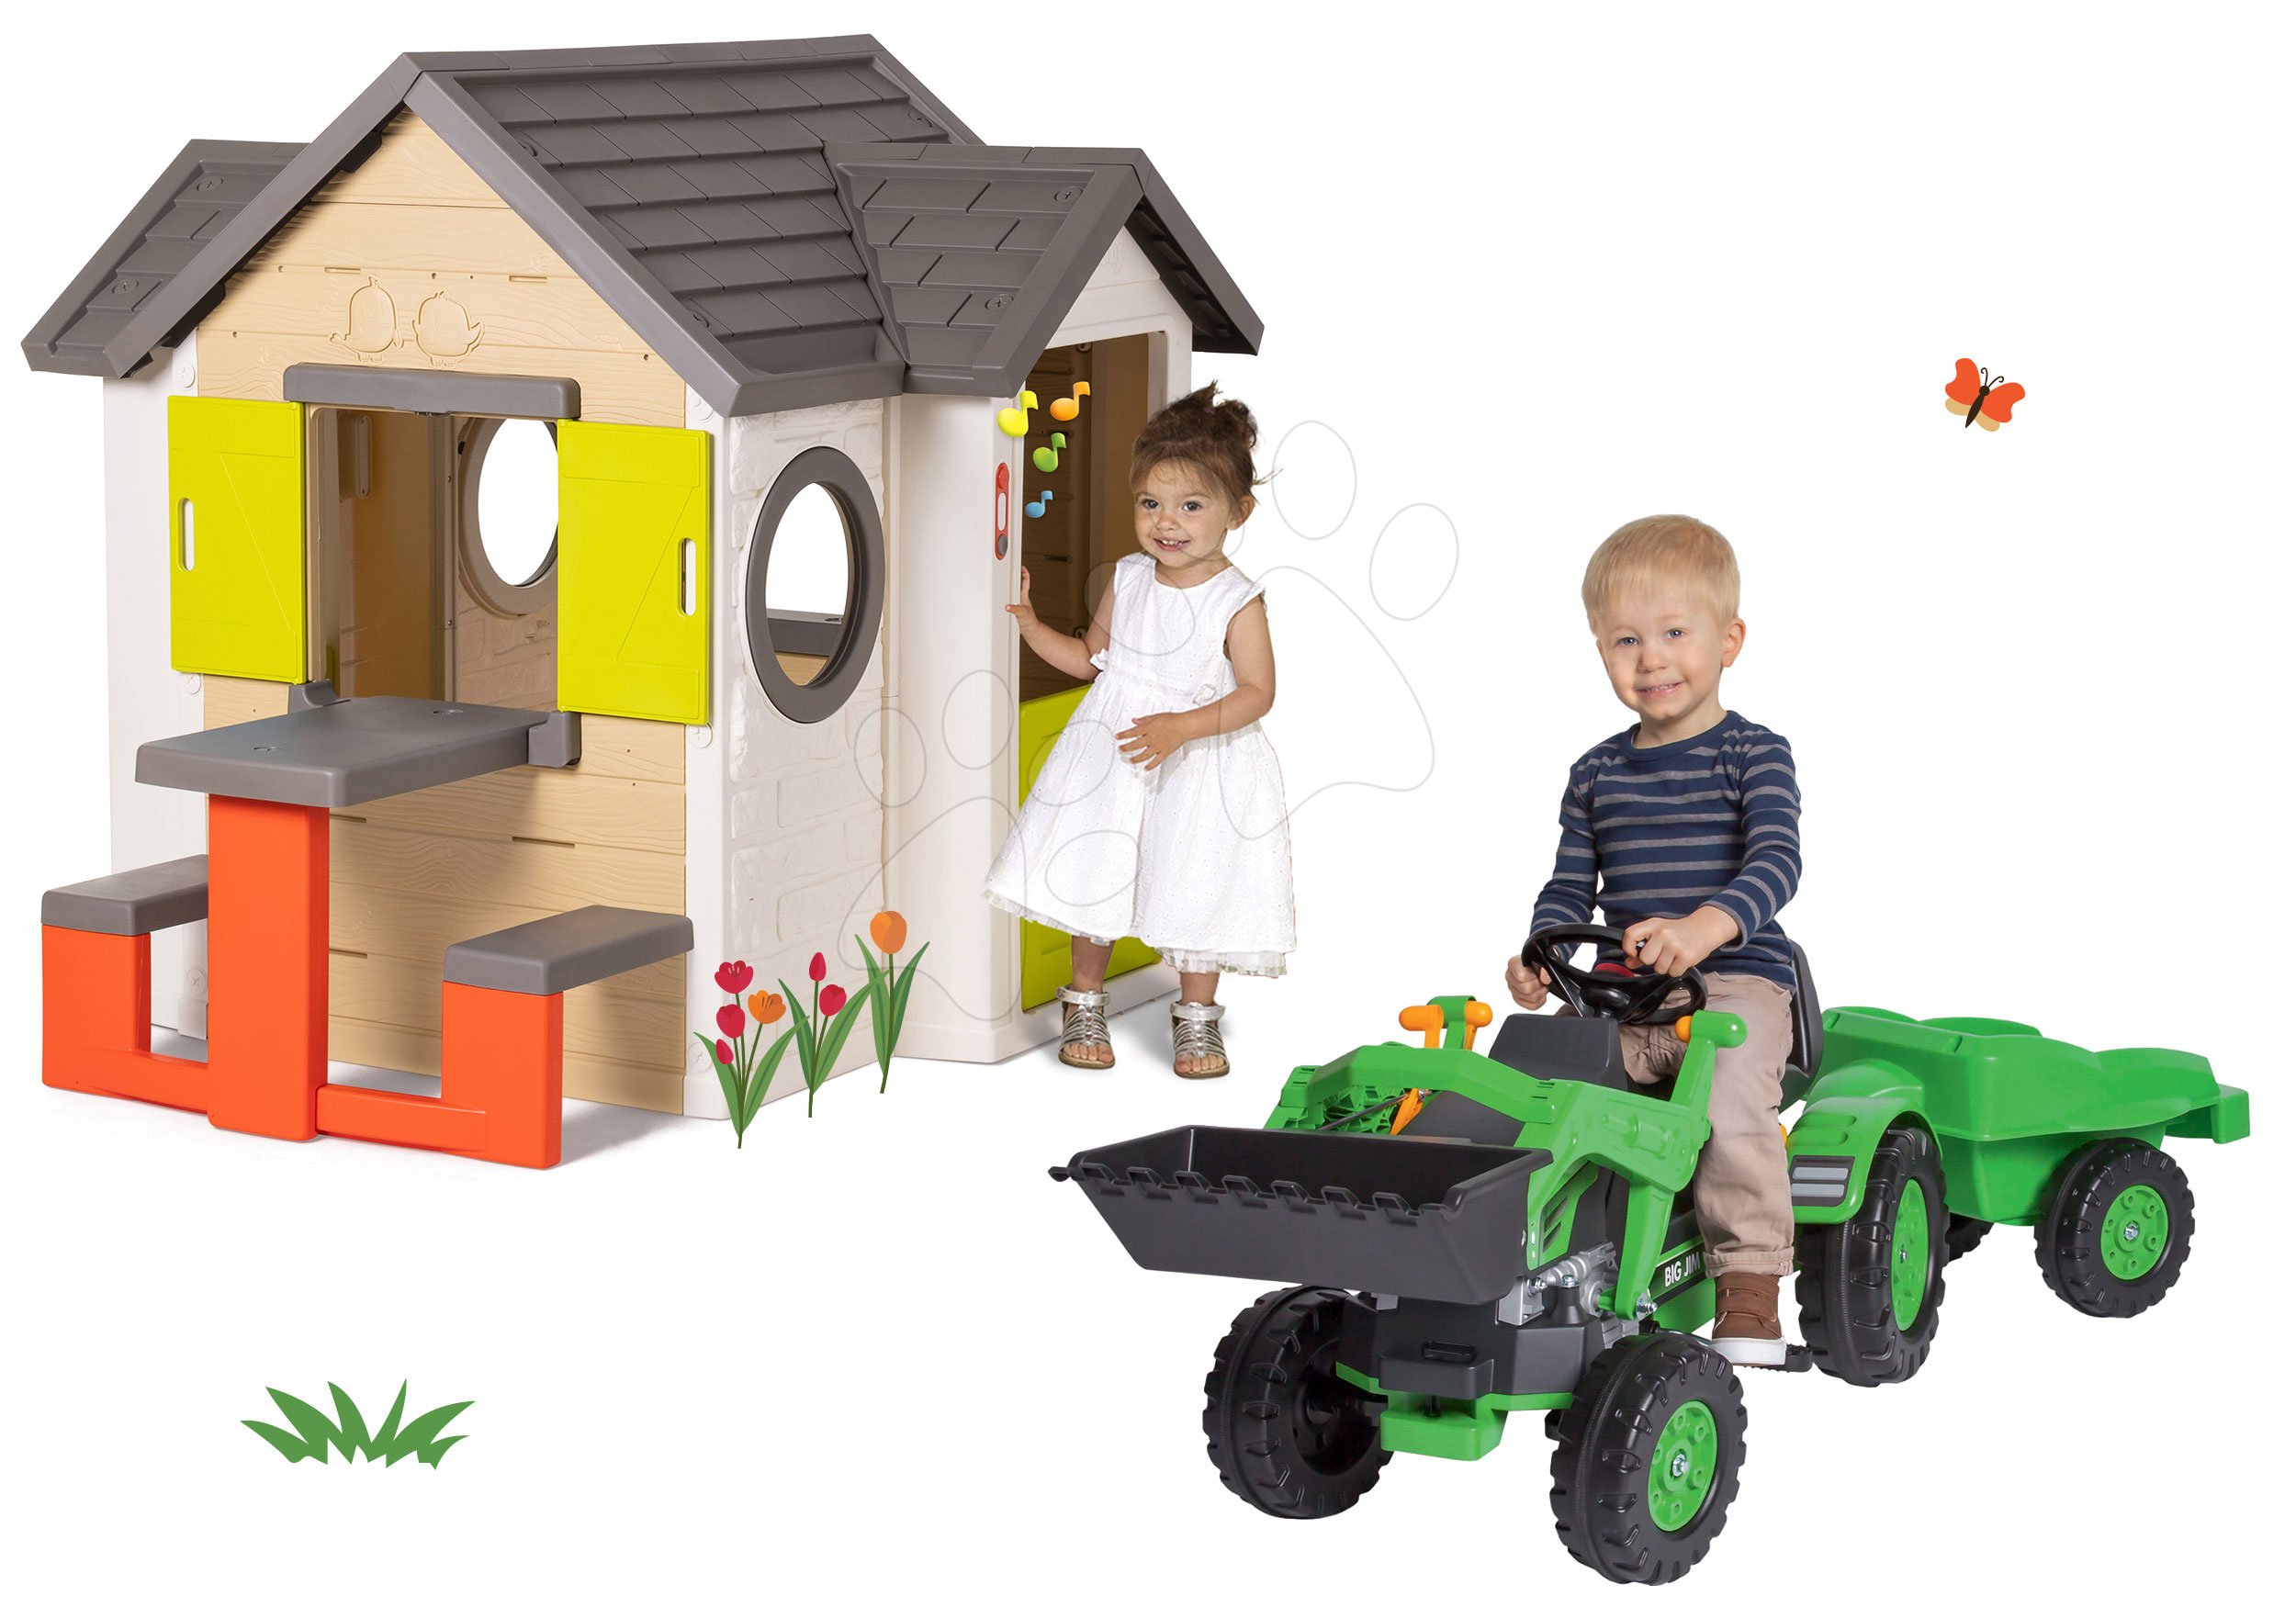 Smoby set detský domček My House Smoby so zvončekom a traktor na šliapanie s nakladačom a prívesom 810401-24